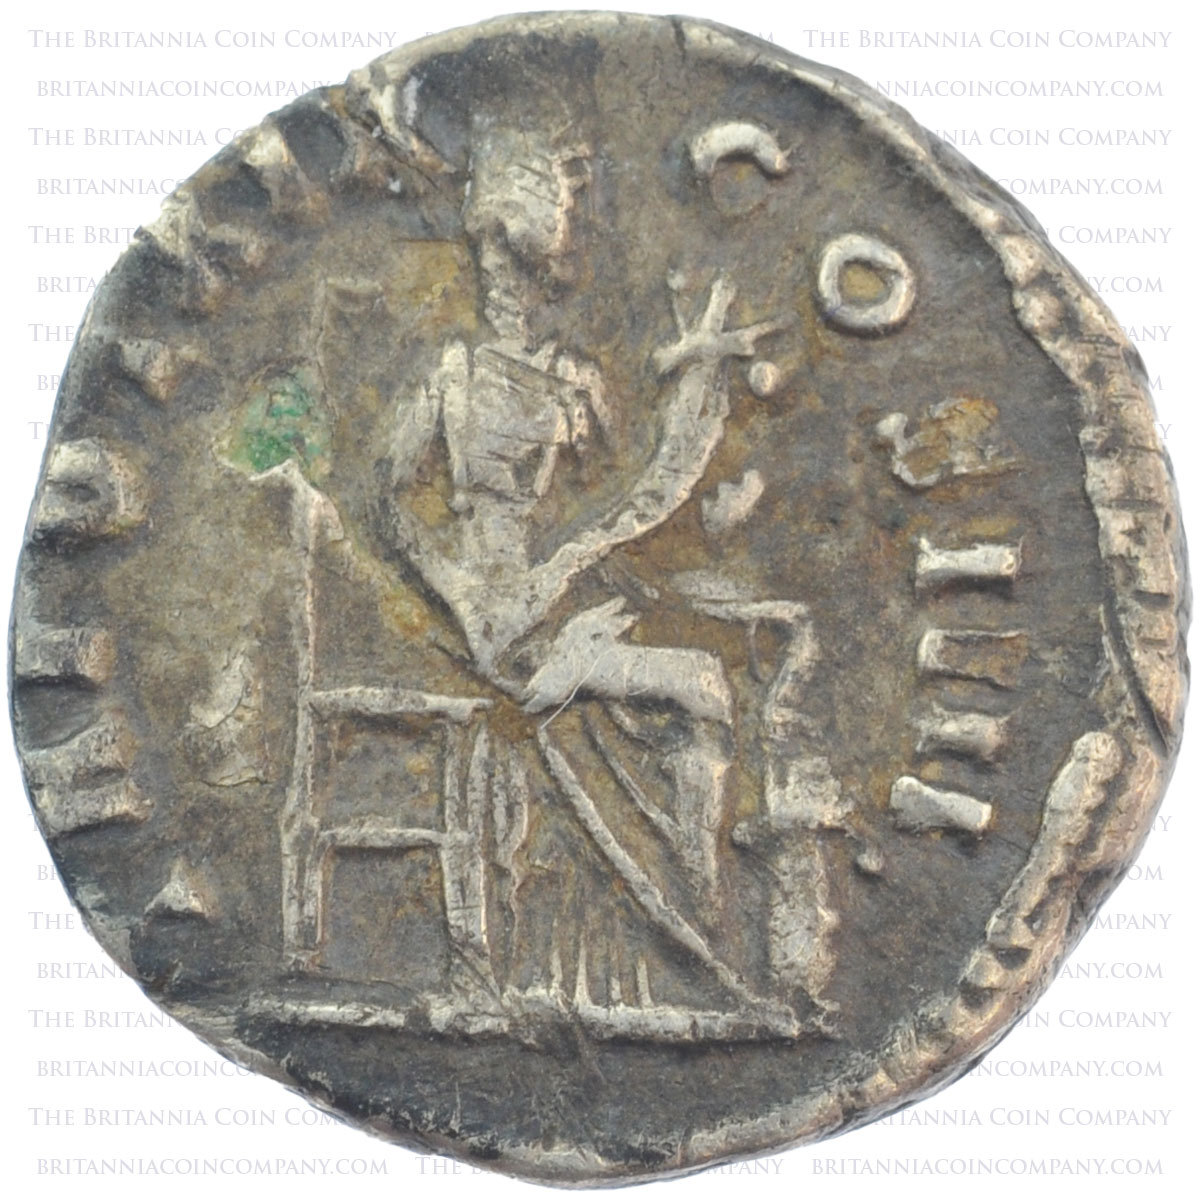 AD 138-161 Antoninus Pius AR Denarius